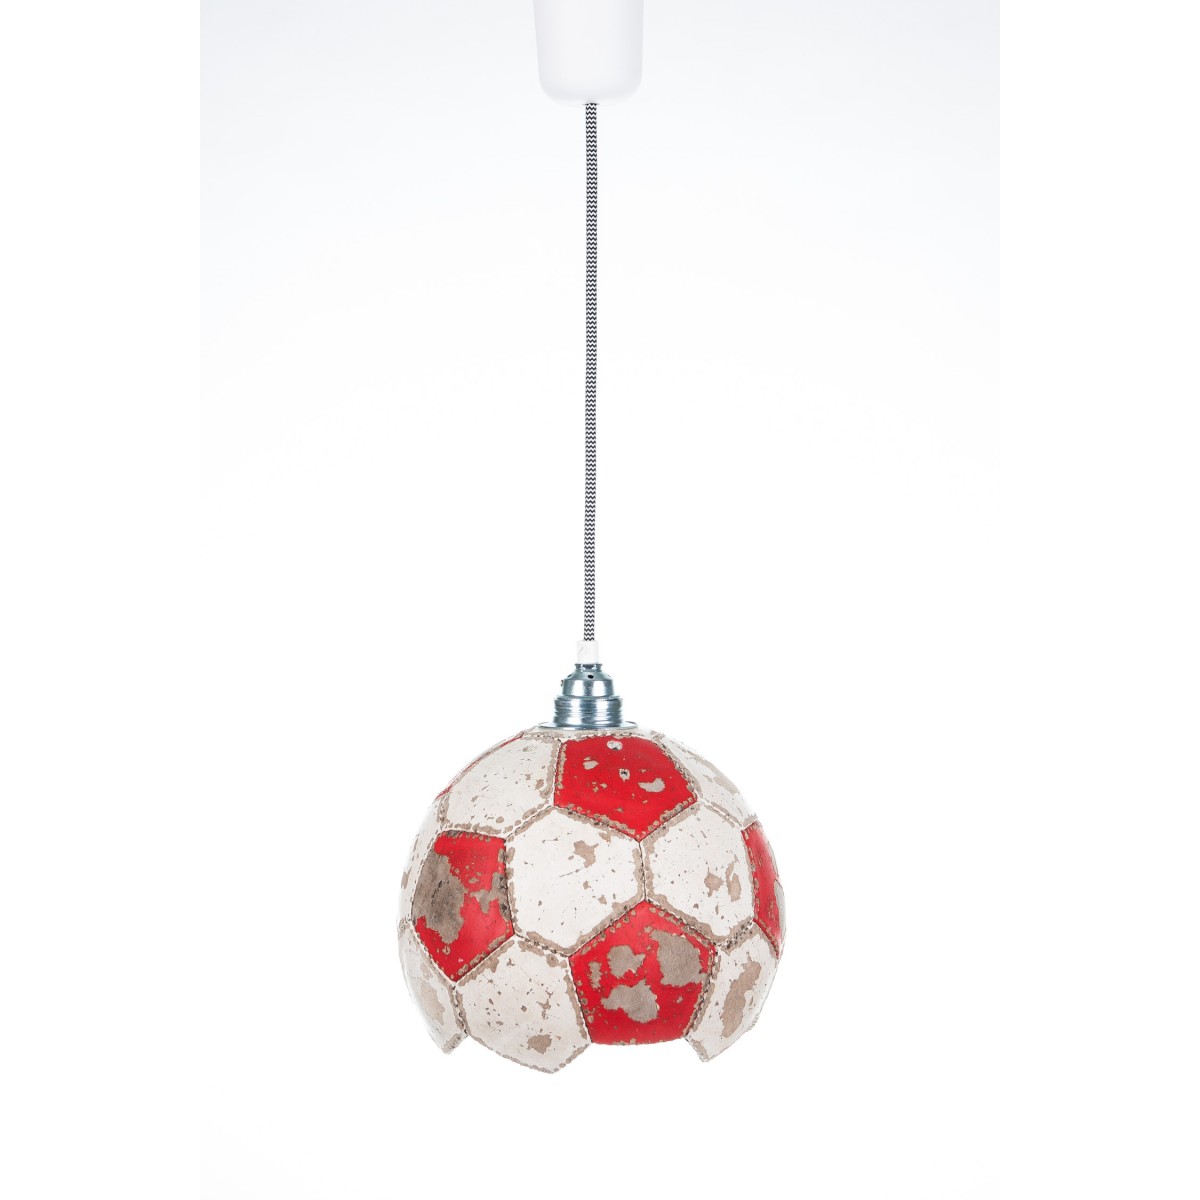 Karolchicks Fussball Lampe Upcycling